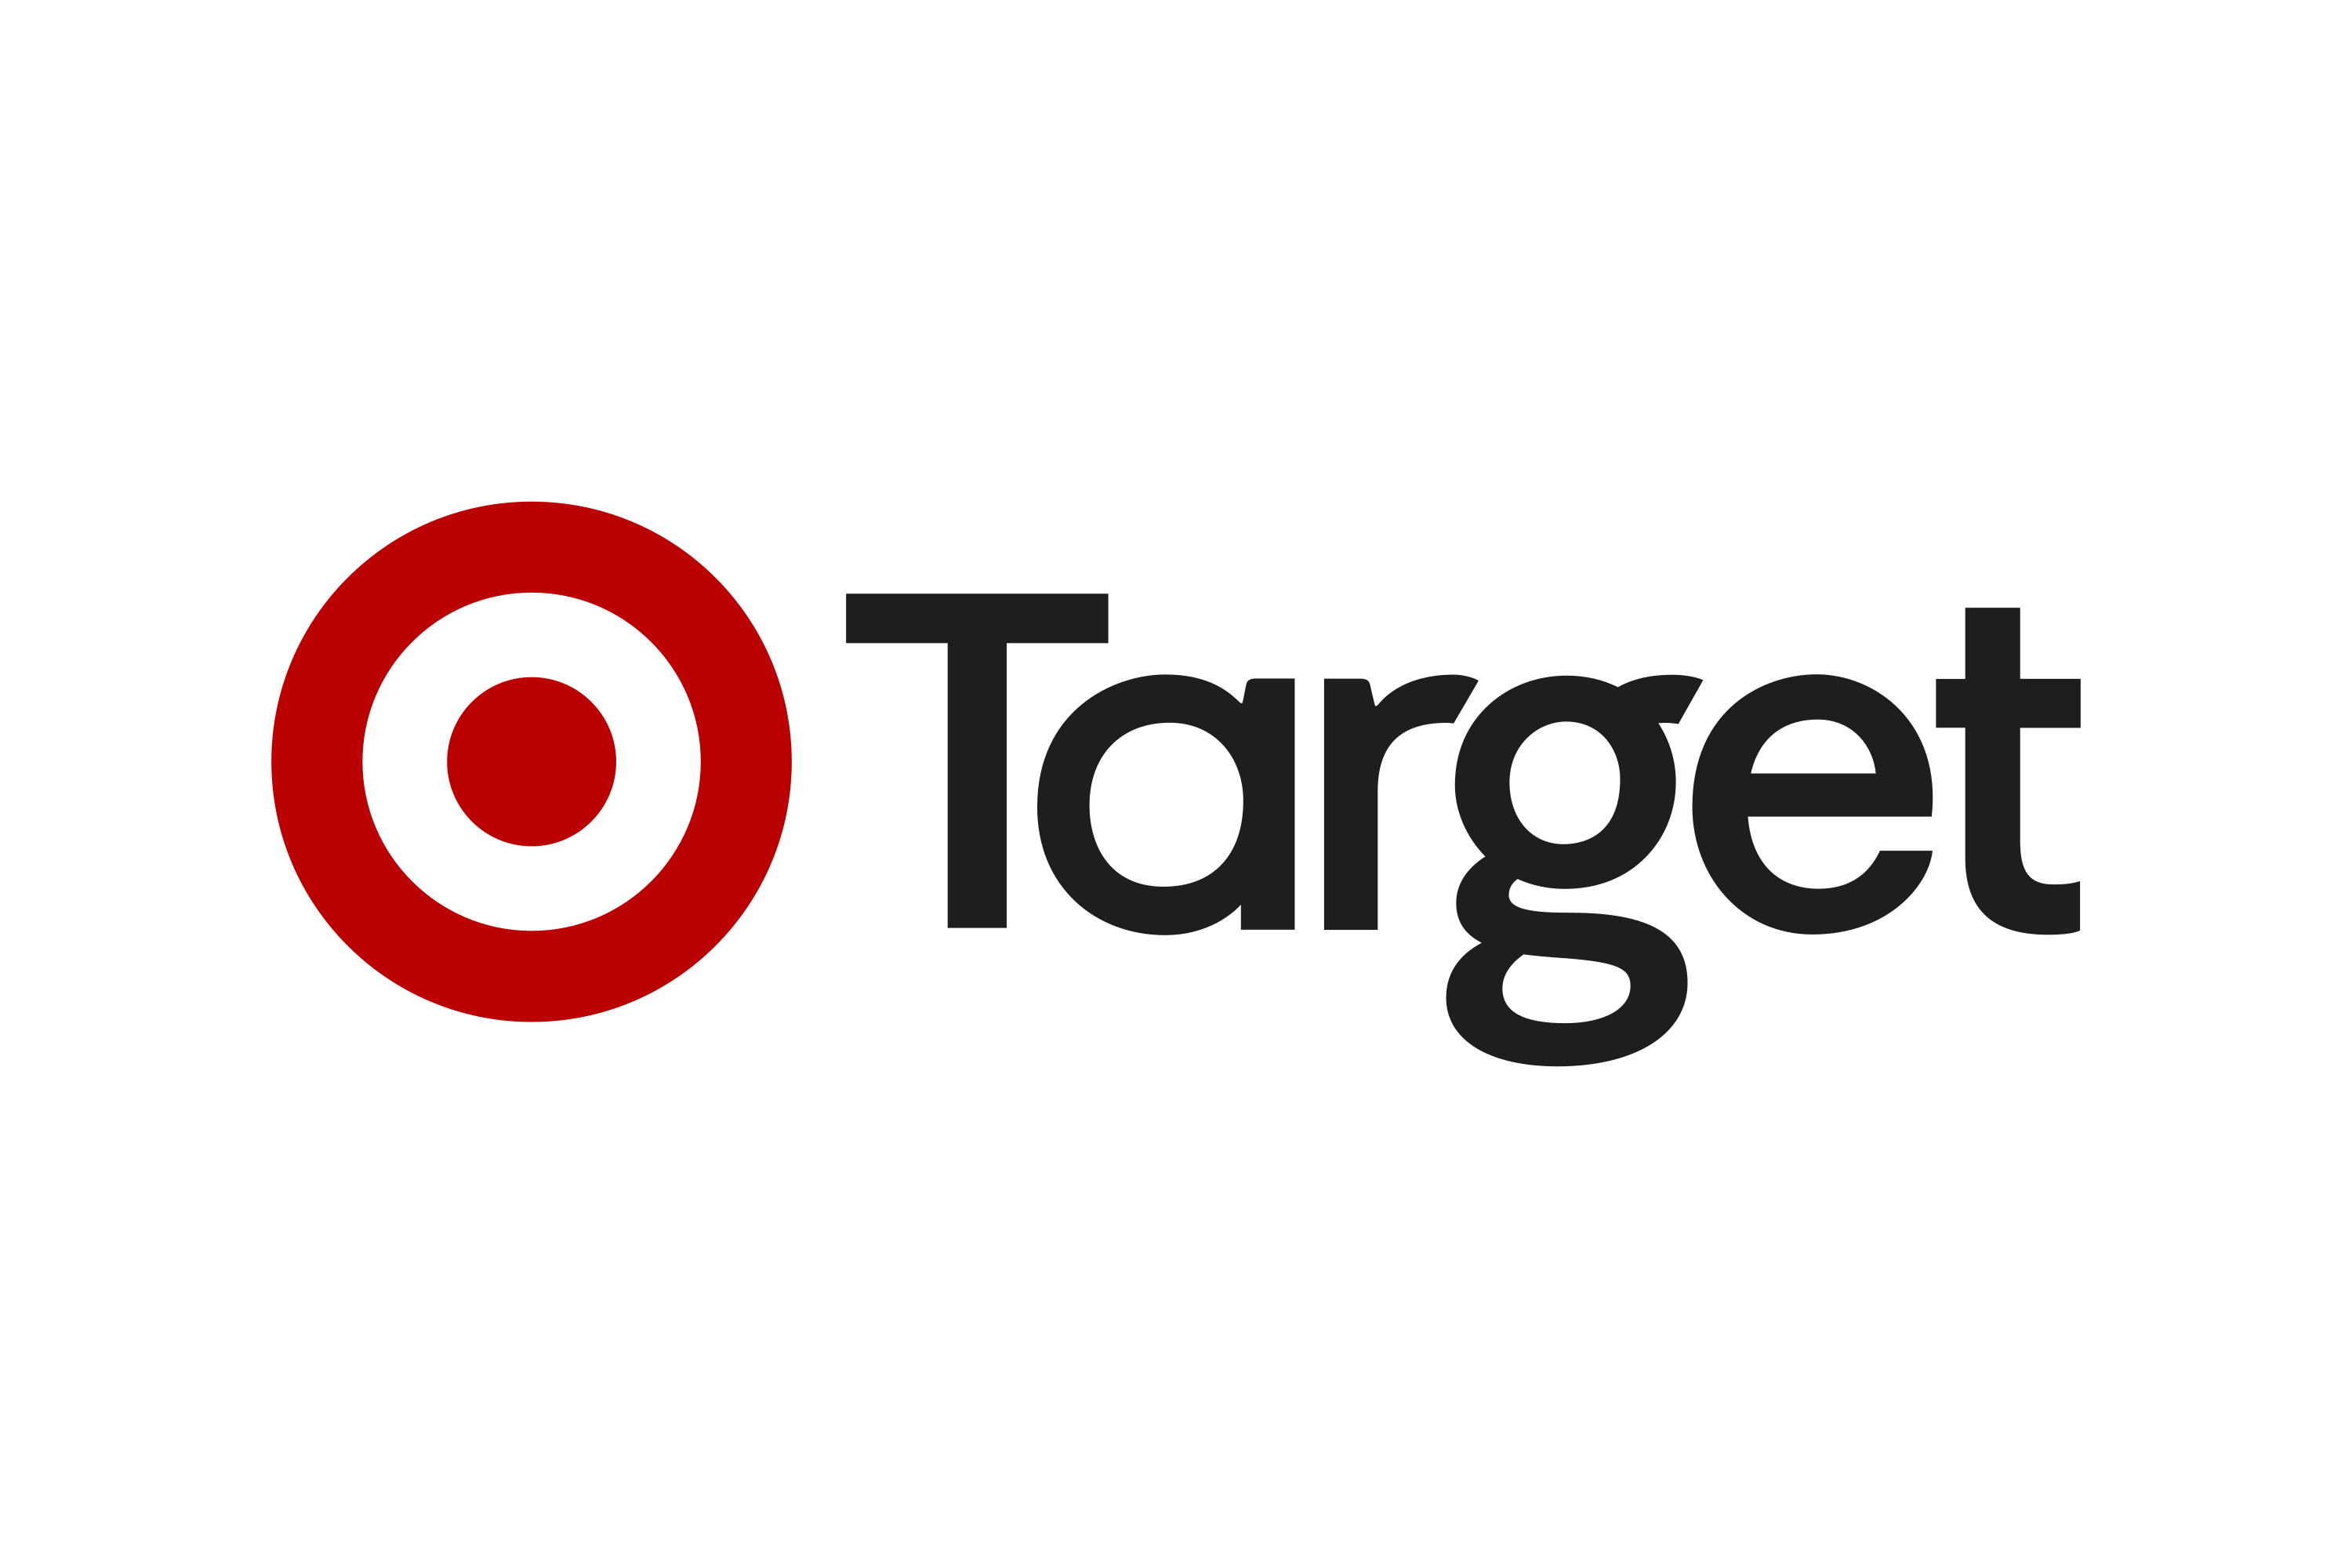 Download Target Australia (Lindsay's) Logo in SVG Vector or PNG